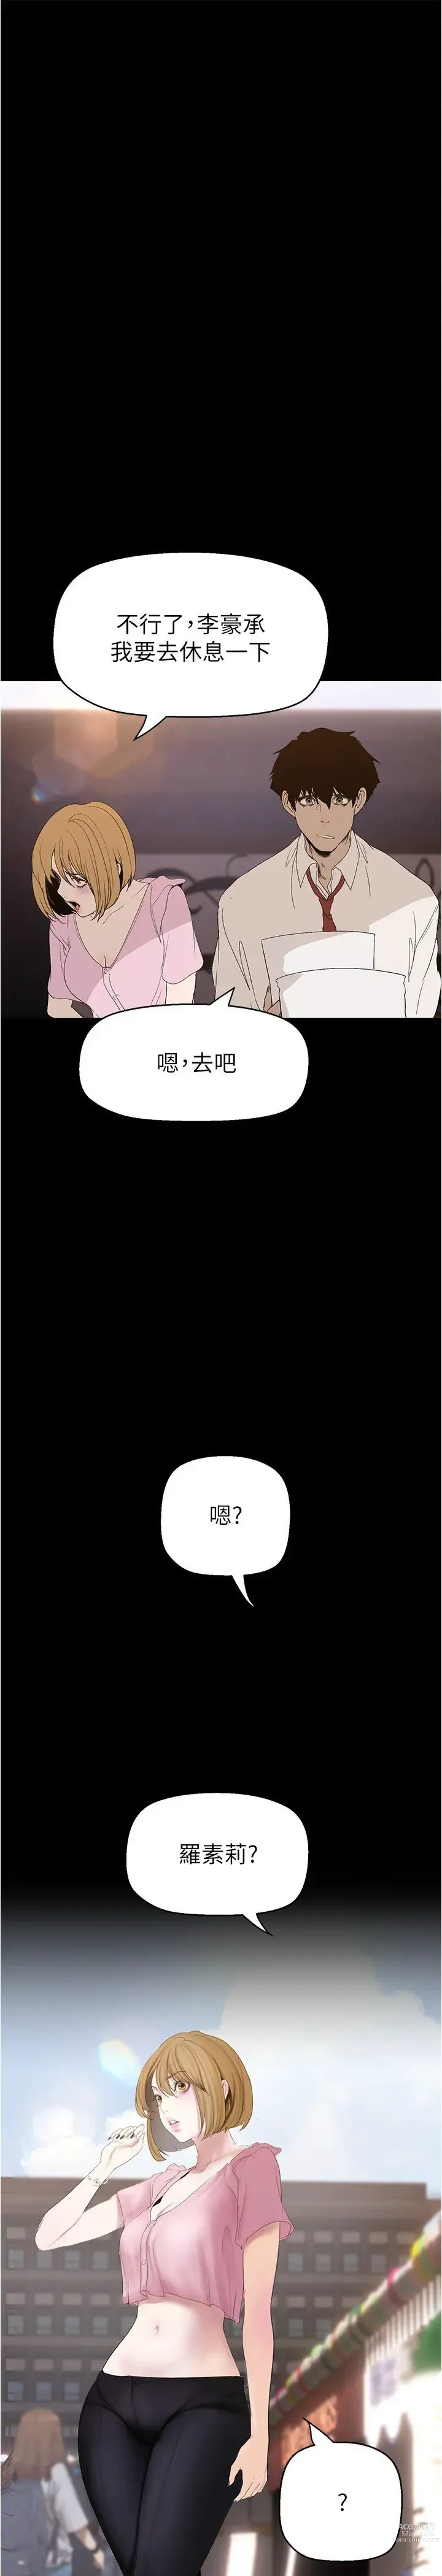 Page 2 of manga 美丽新世界/A Wonderful New World 193-216